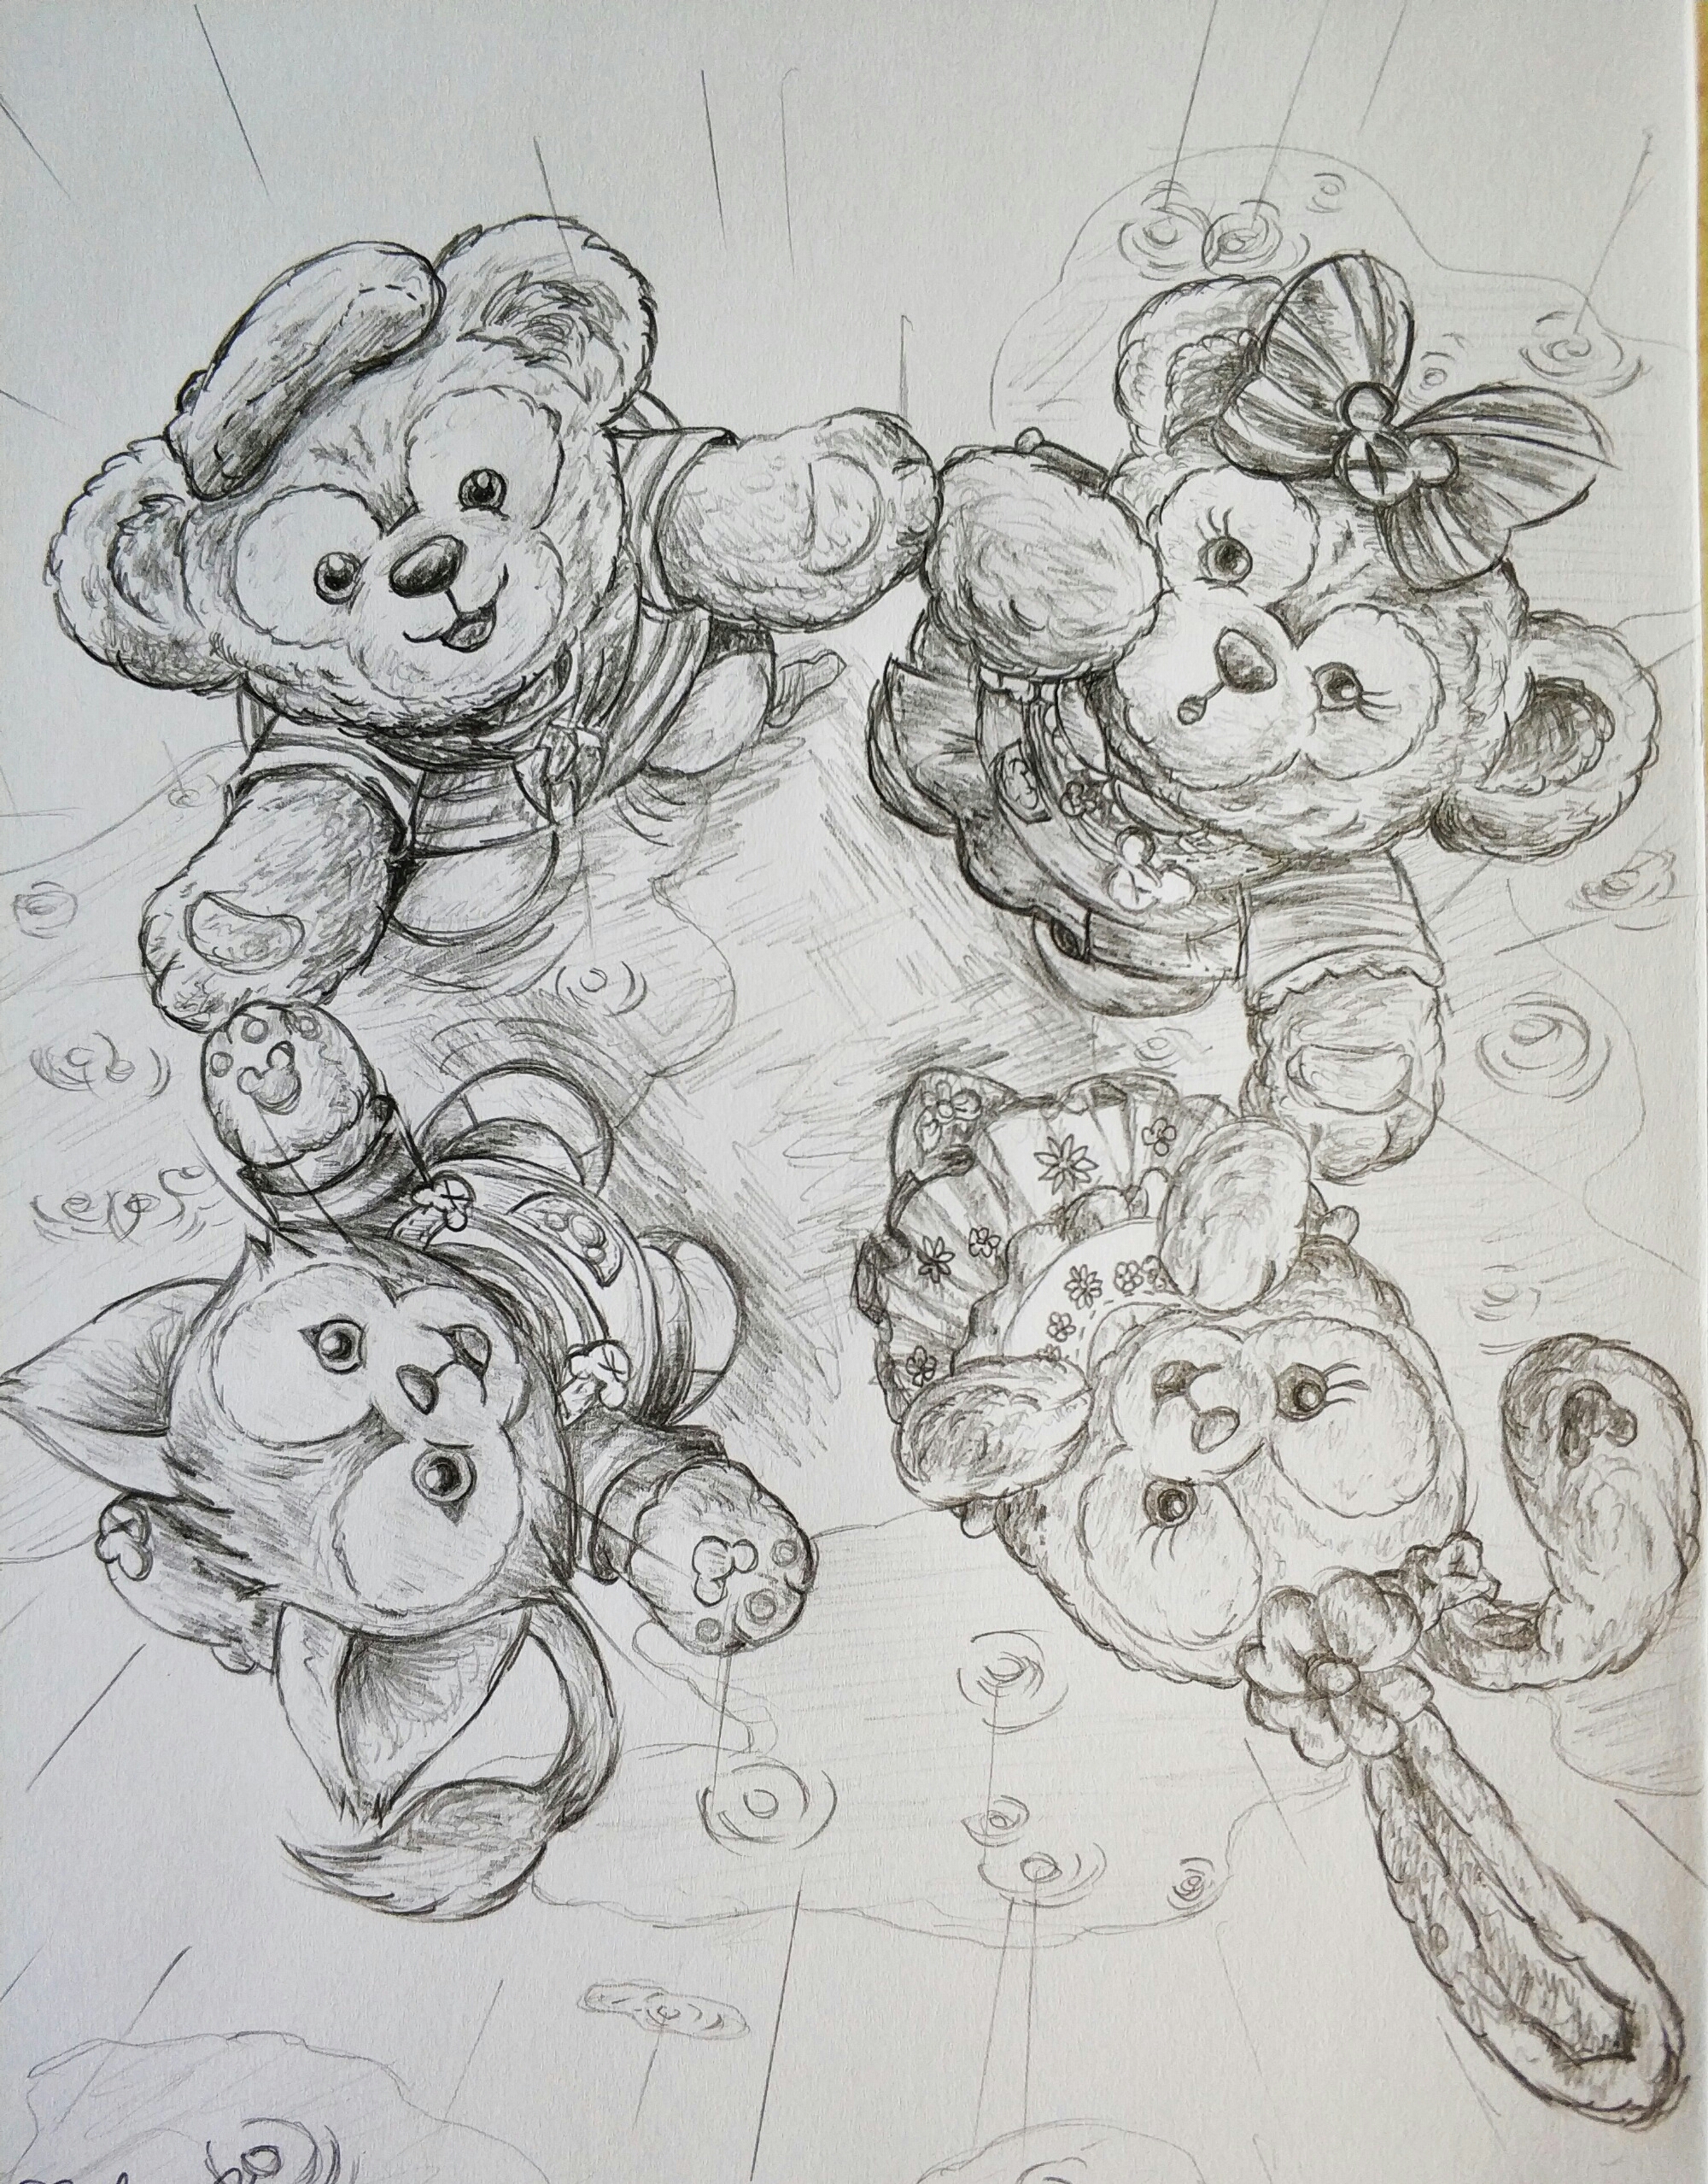 分享一组超好看的素描画 松松总动员-迪士尼萌团-小米游戏中心